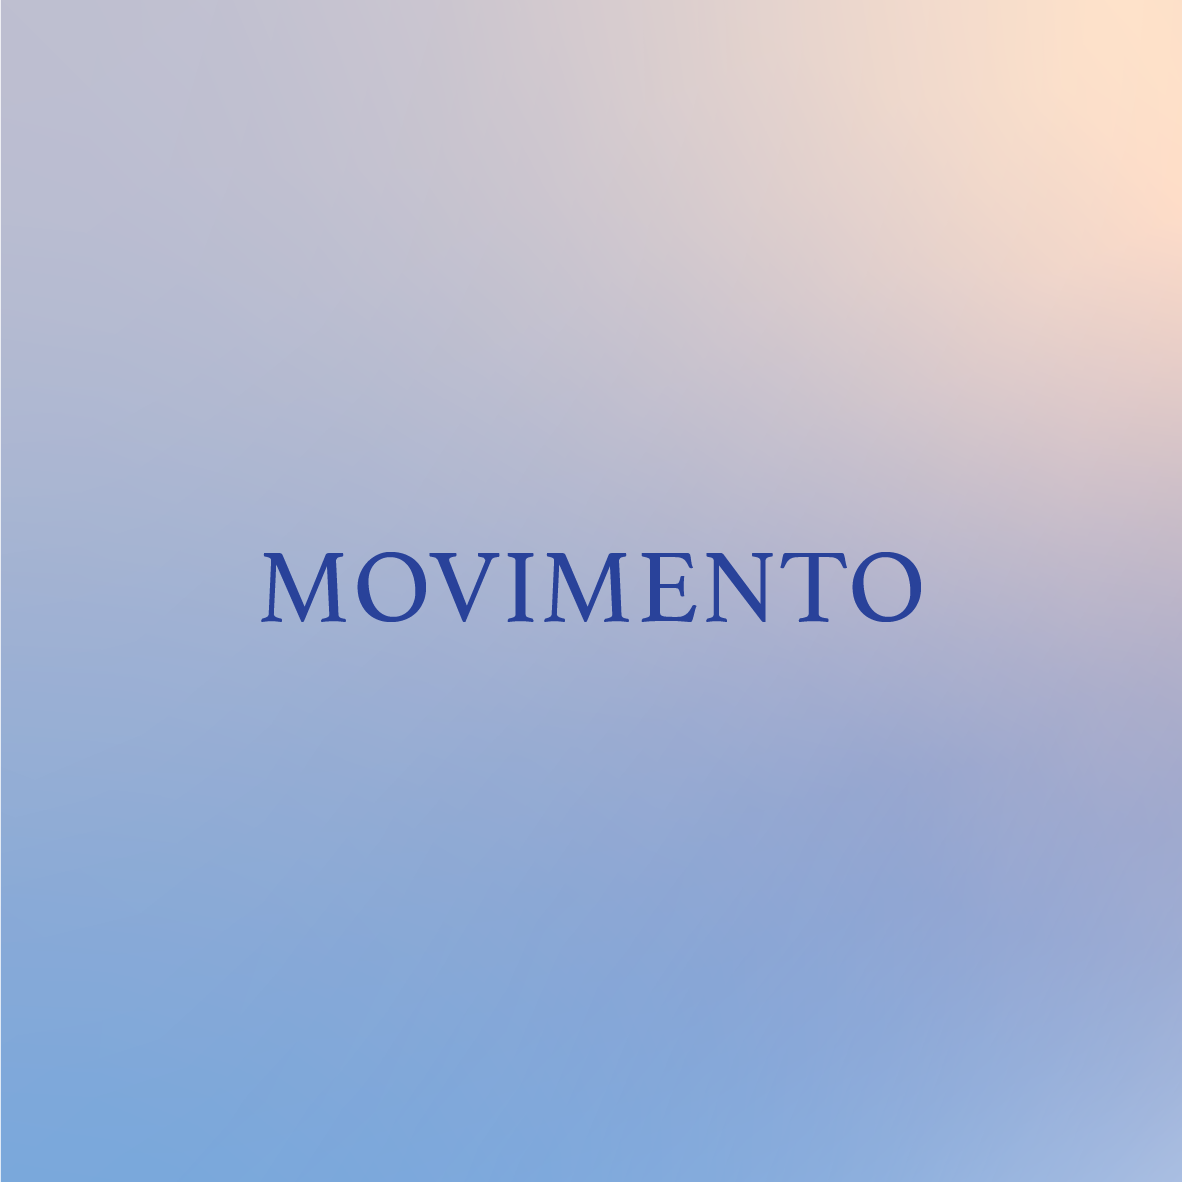 La parola movimento è su sfondo blu